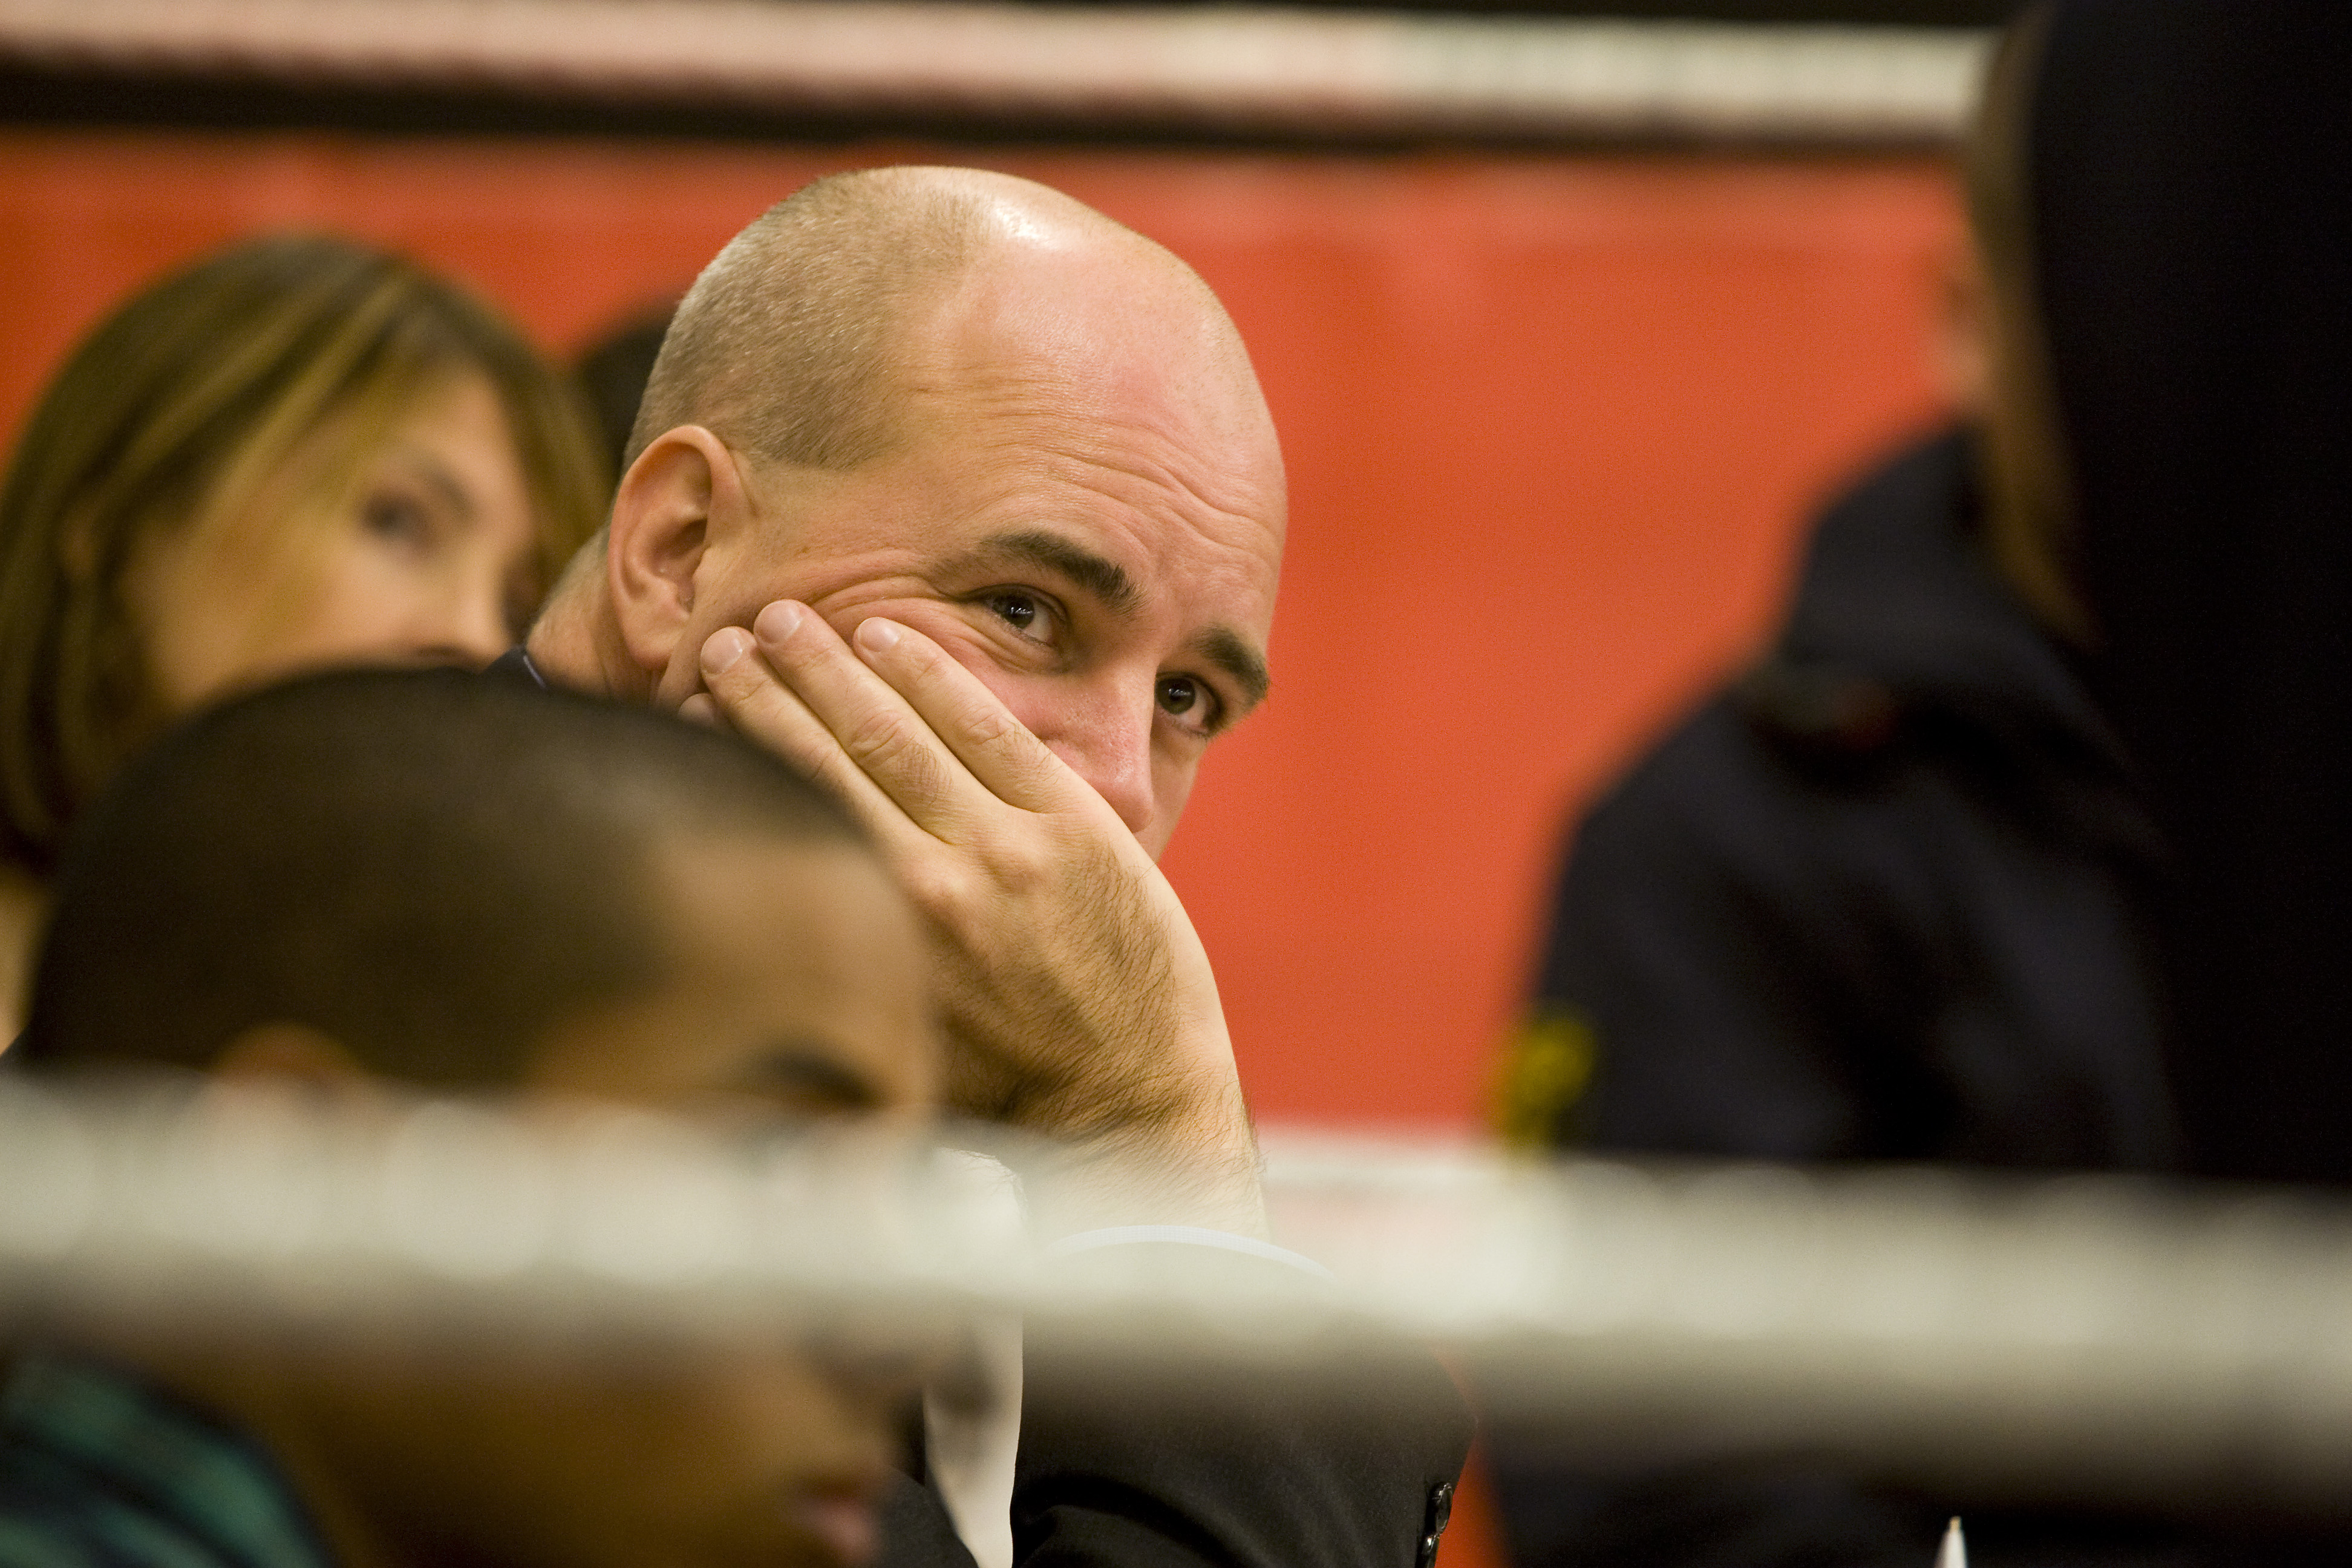 Jobb, SSU, Ungdomsarbetslöshet, Fredrik Reinfeldt, Riksdagsvalet 2010